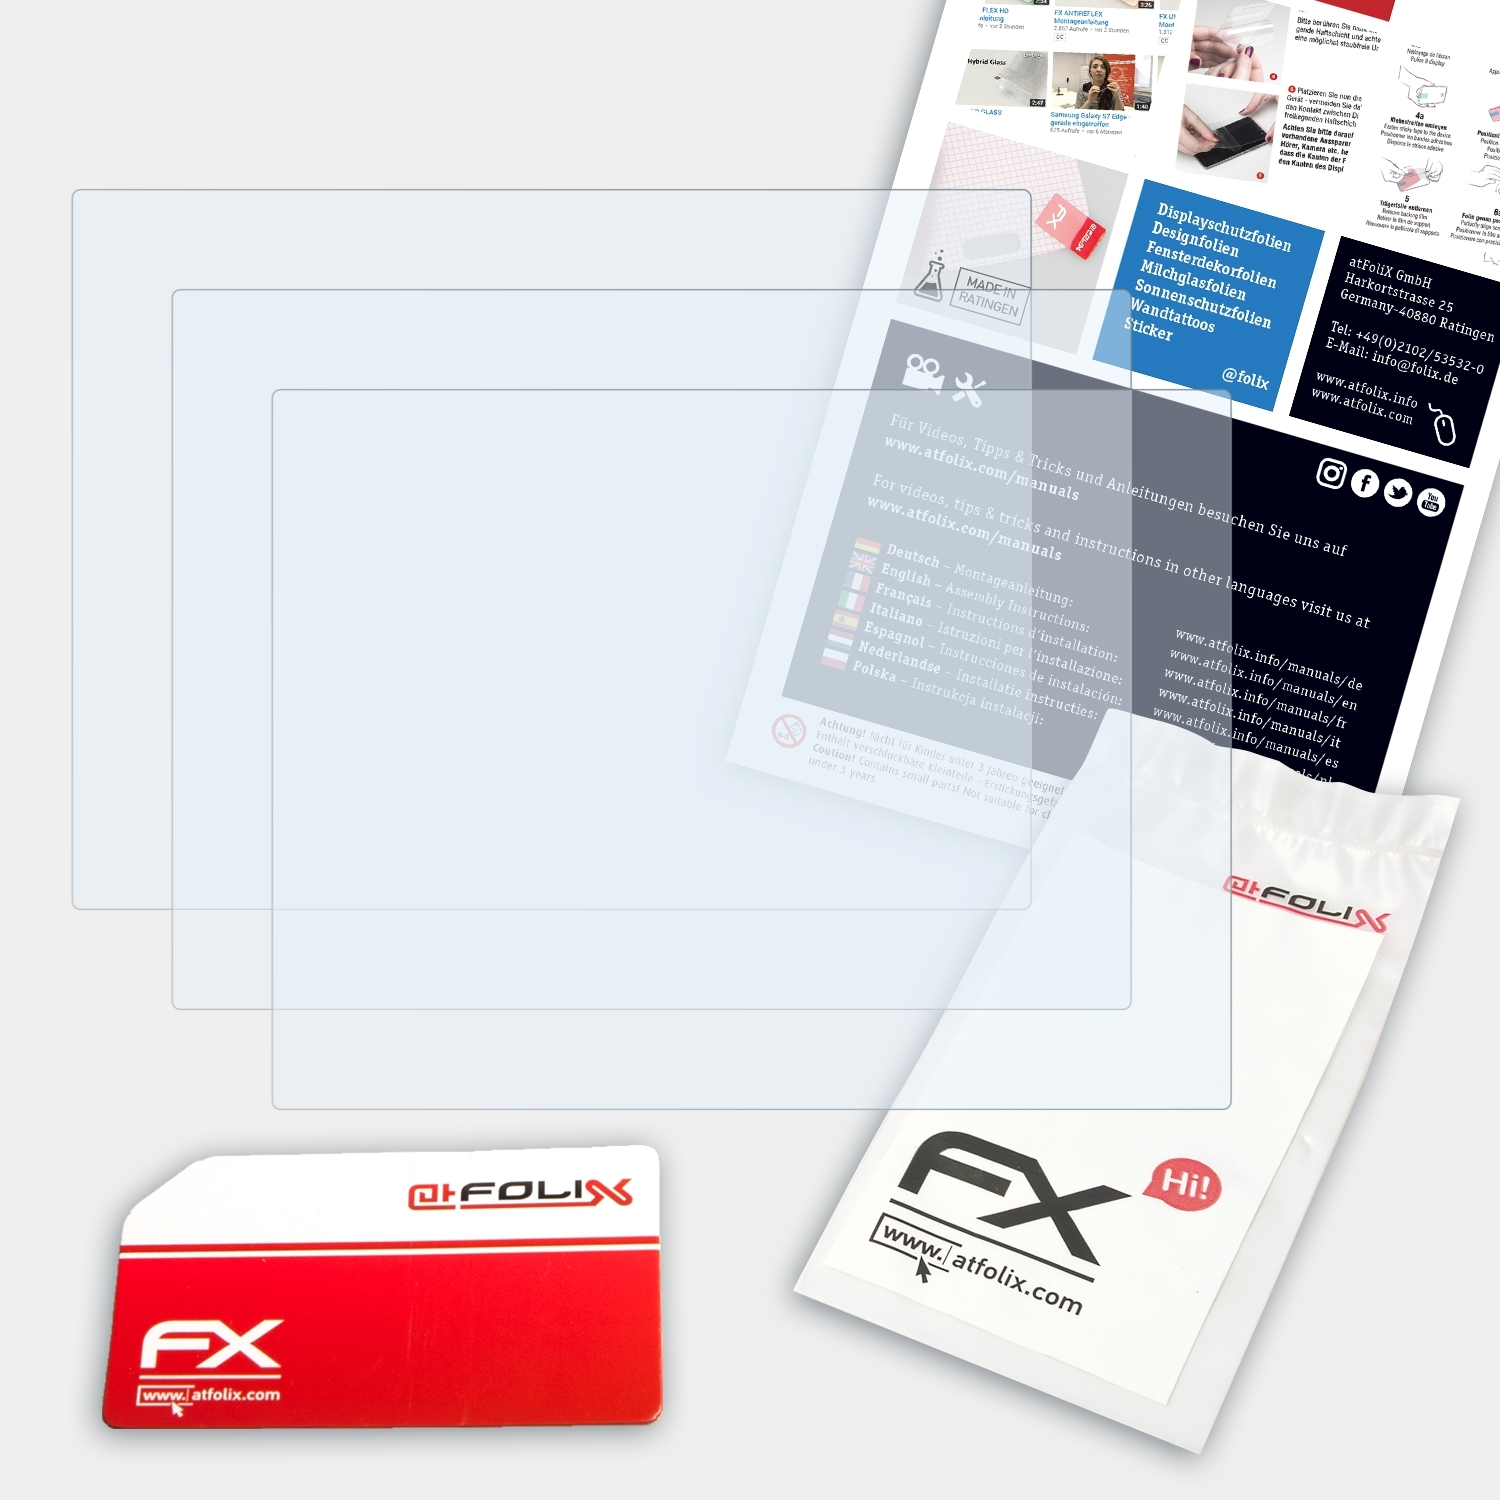 ATFOLIX 3x FX-Clear Displayschutz(für Olympus E-P2)